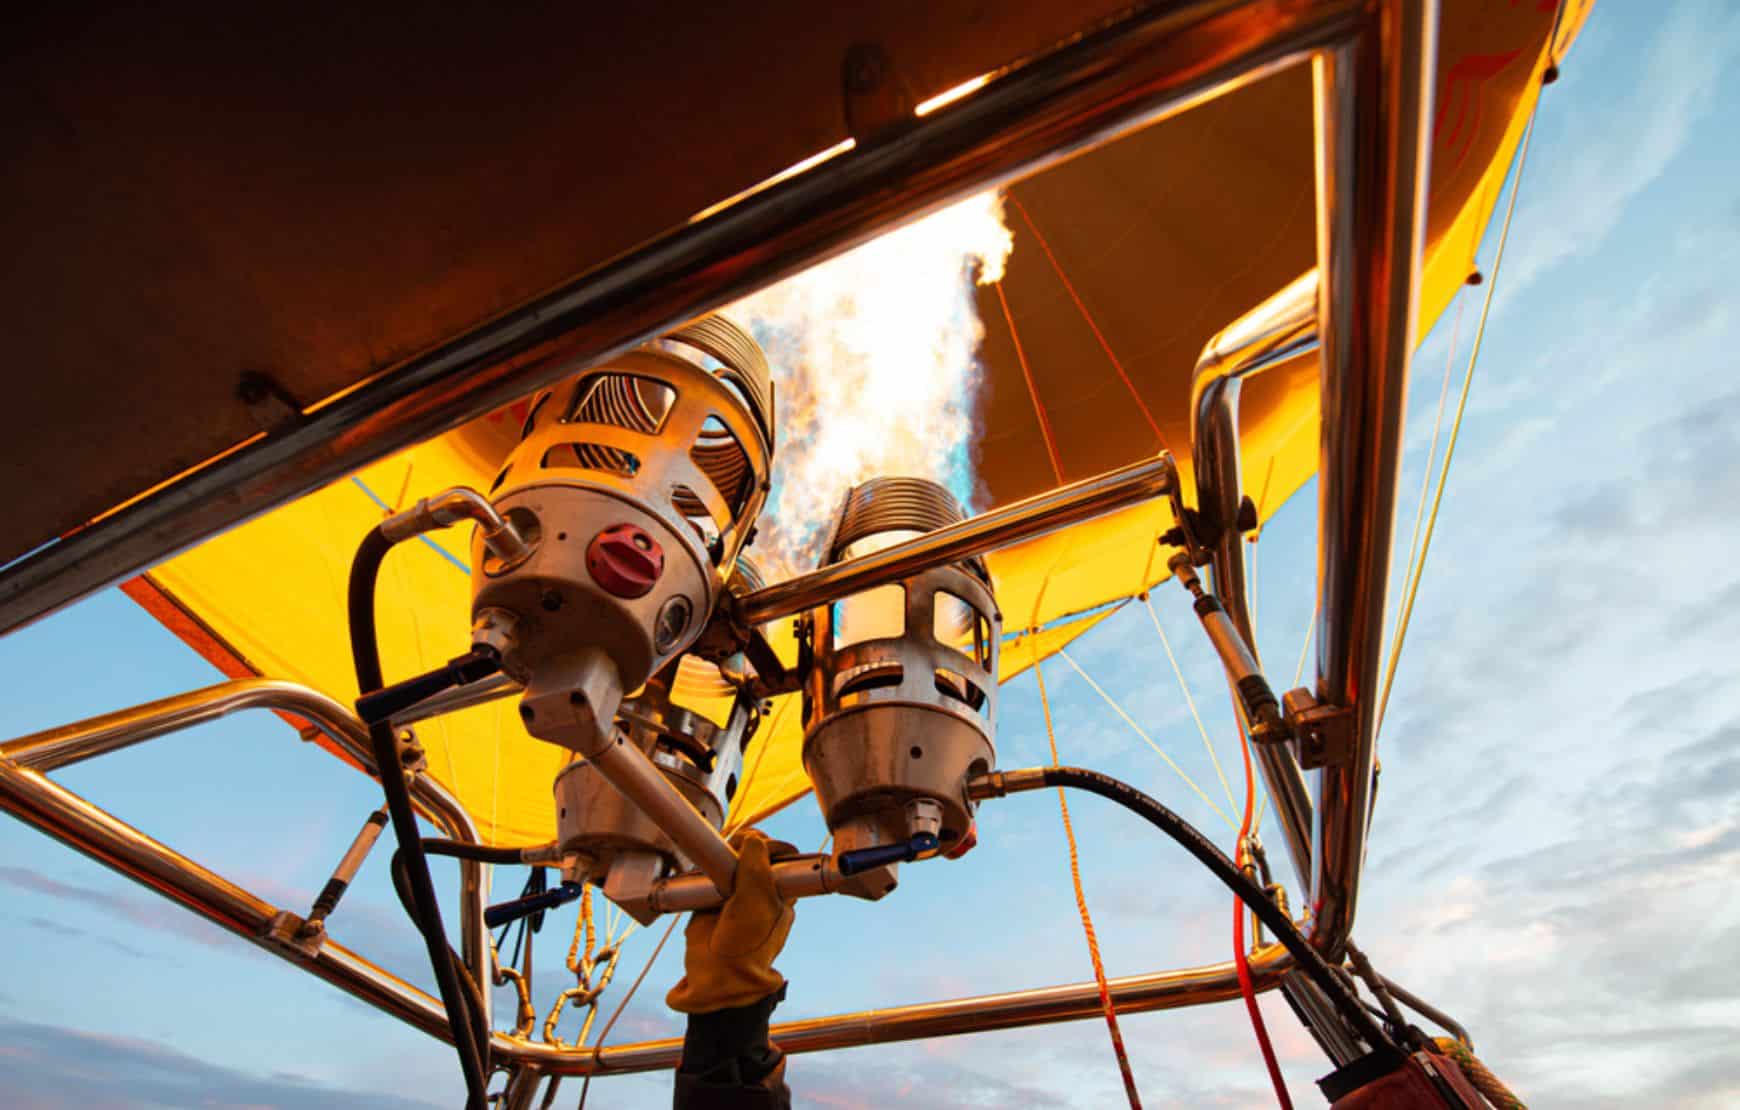 Cappadocia Hot Air Balloon Ride - pilot firing gas